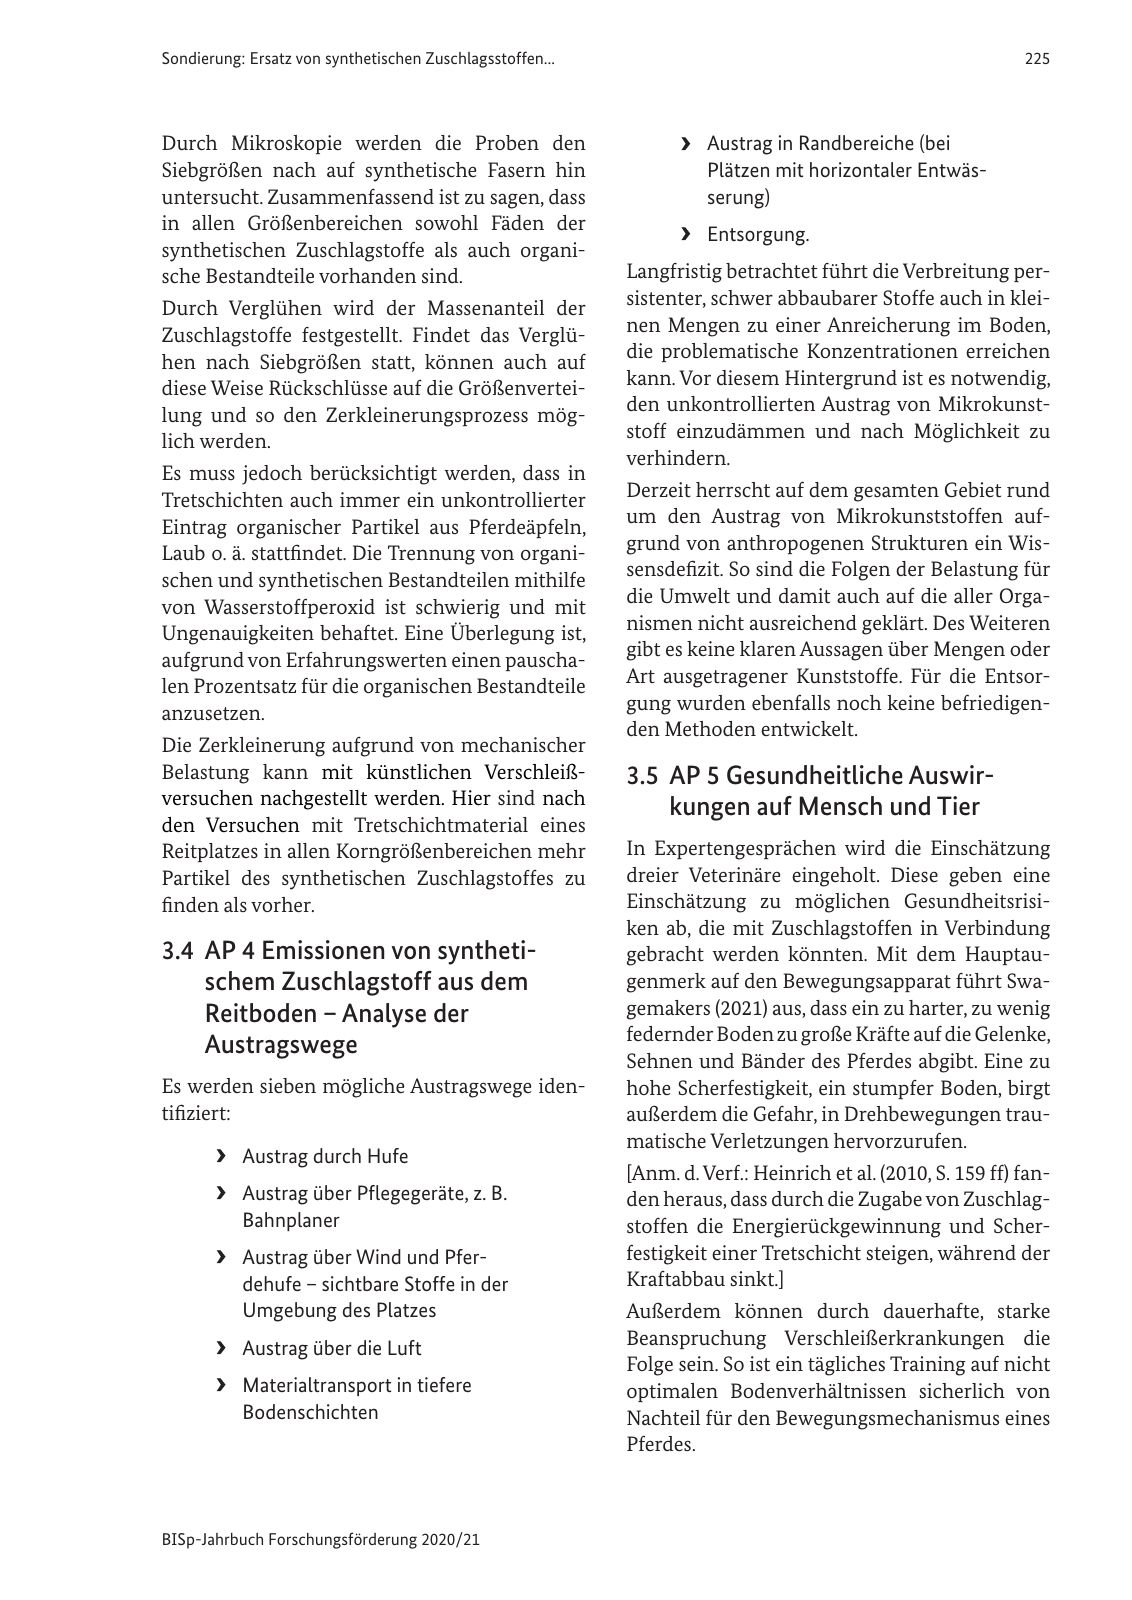 Vorschau BISp-Jahrbuch 2020/21 Seite 227